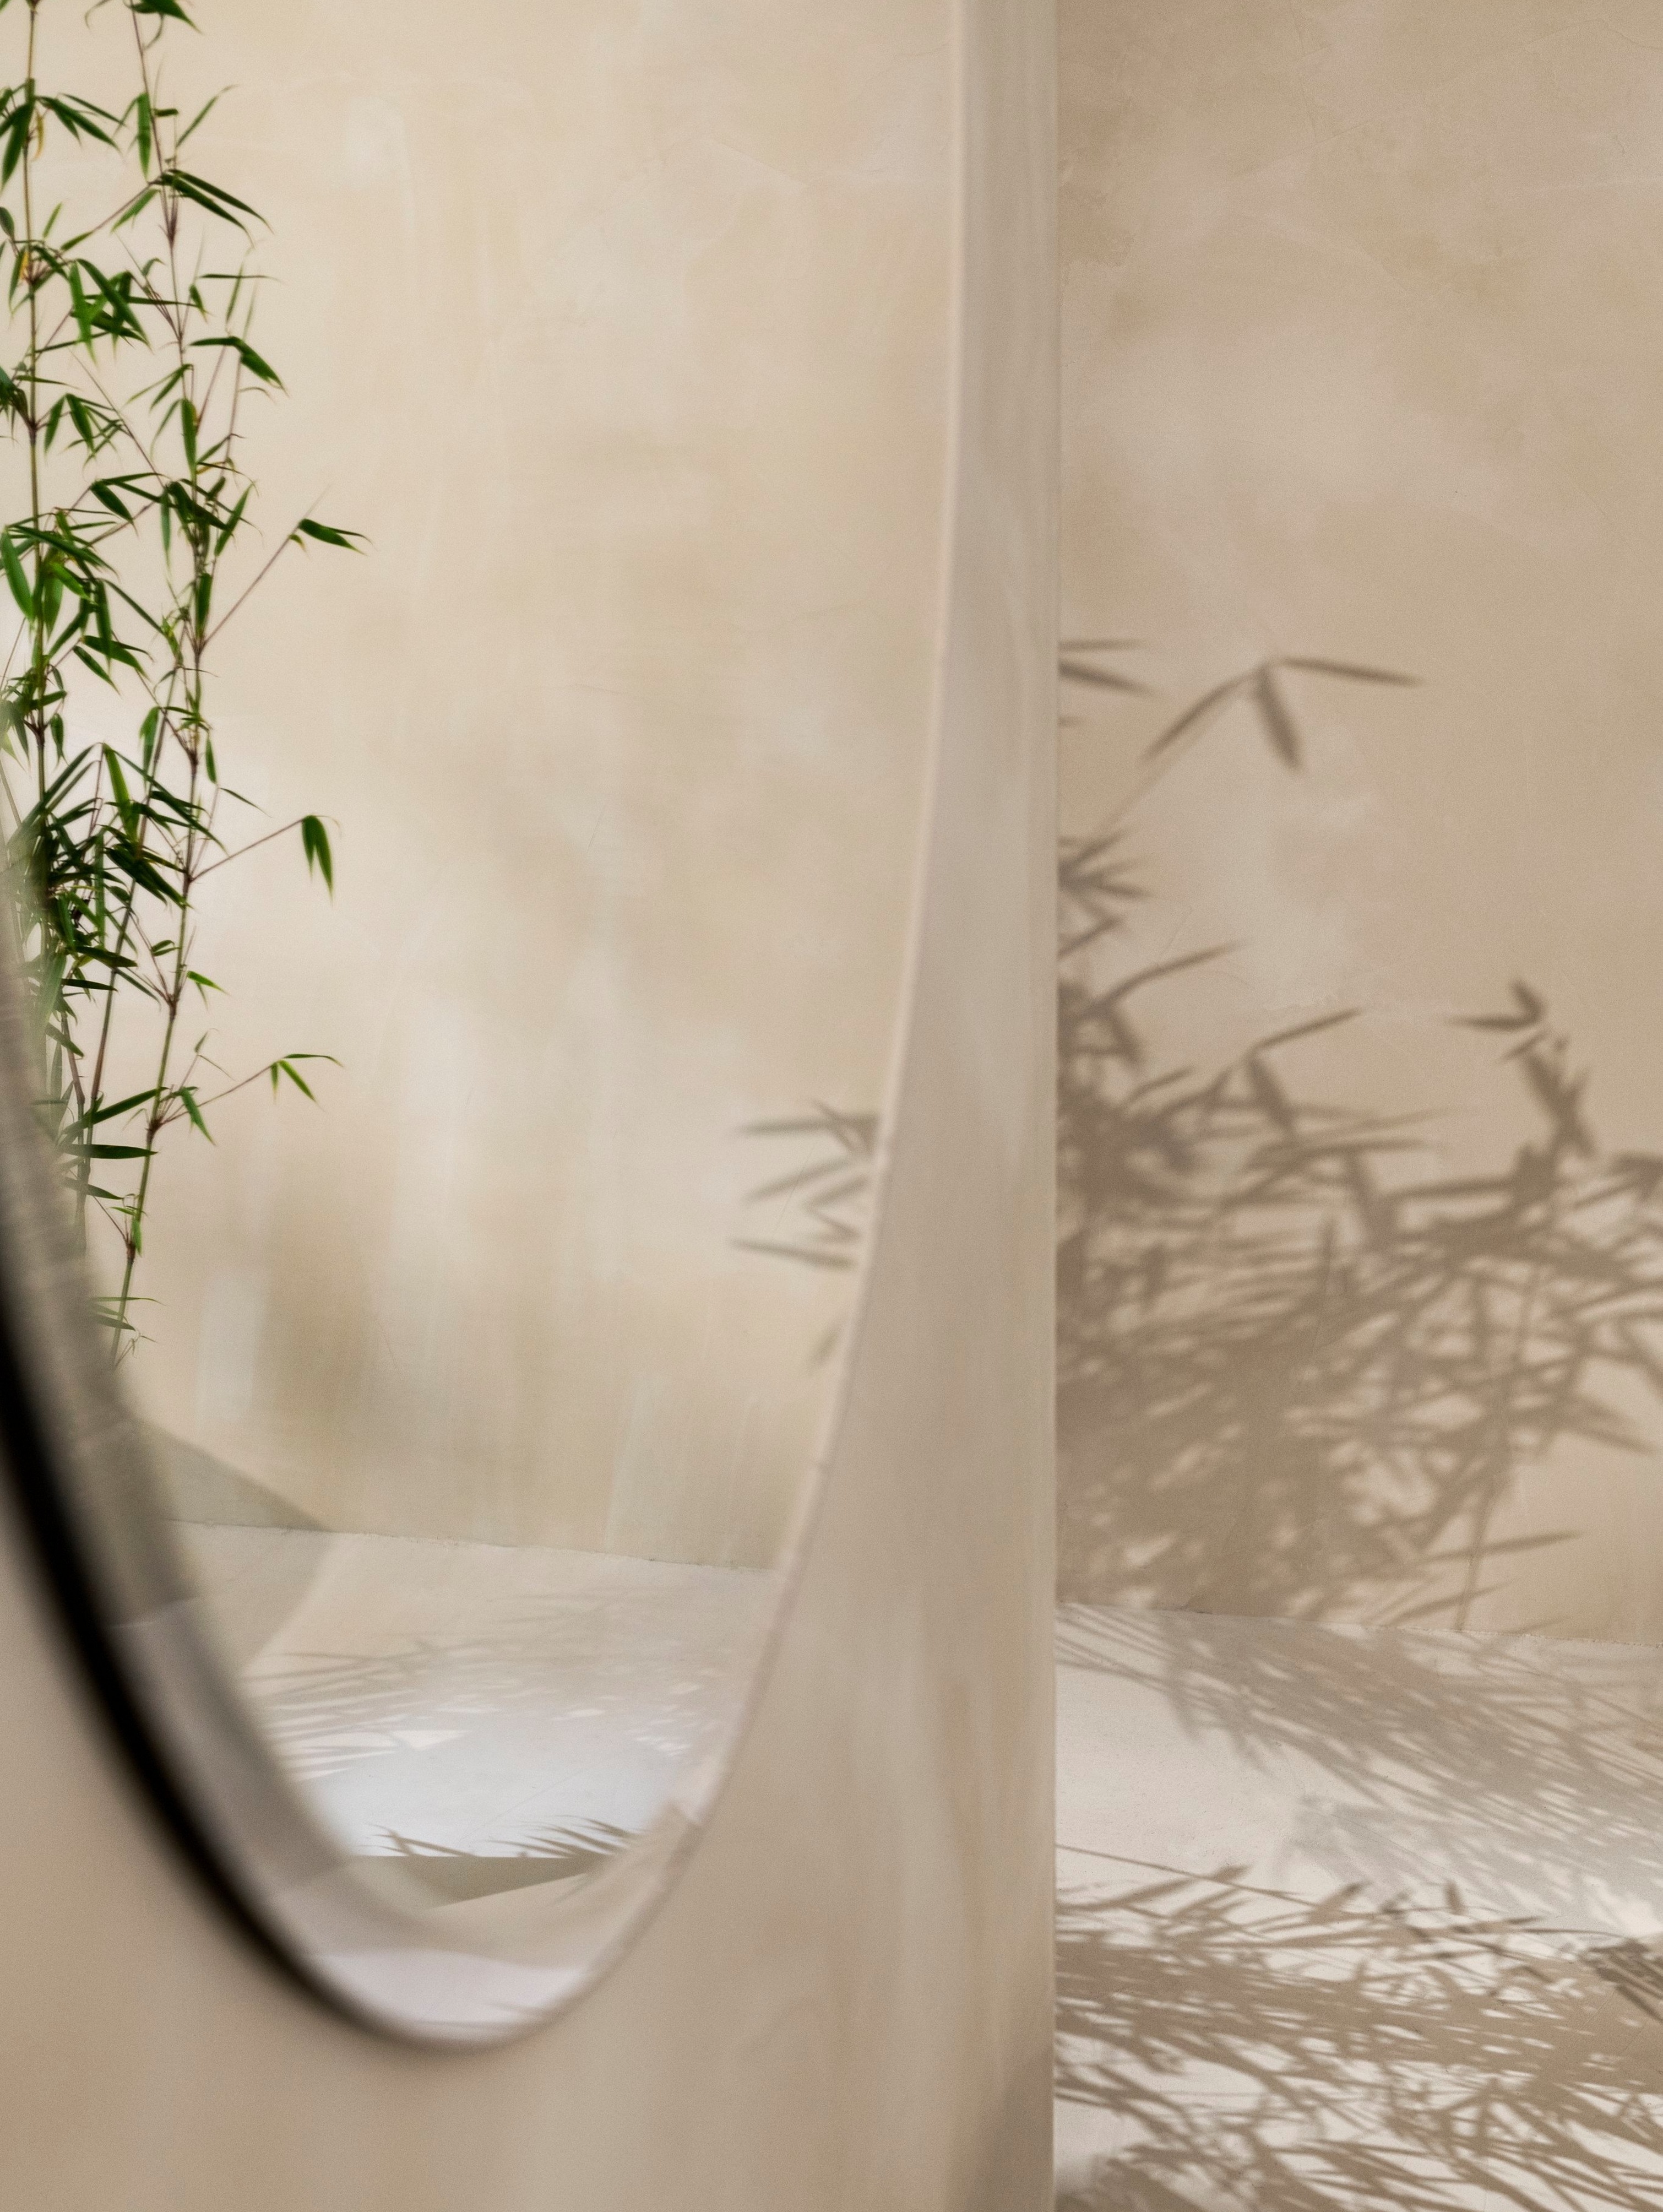 Der runde Tone Spiegel hängt an der Wand, eine Pflanze spiegelt sich darin.